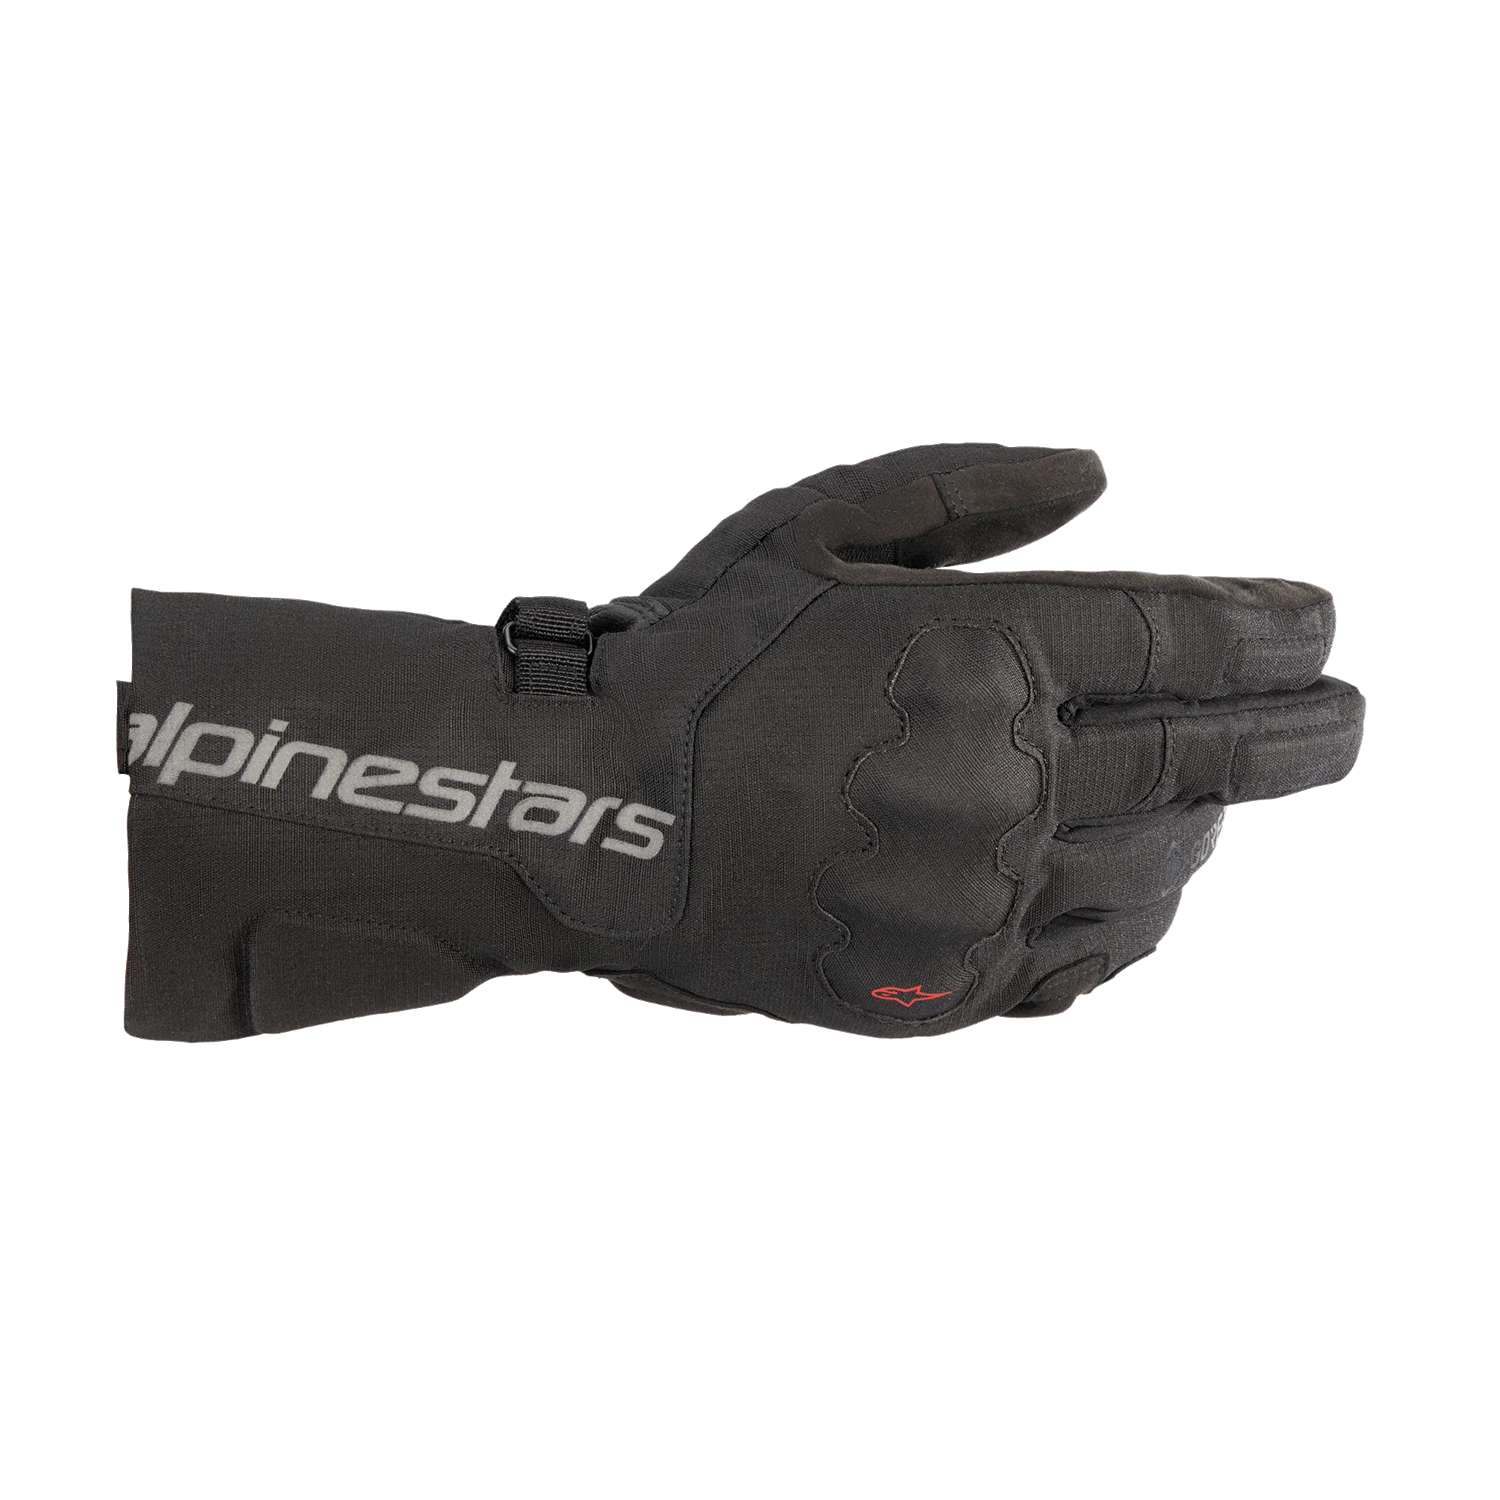 Image of Alpinestars Wr-X Gore-Tex Gloves Black Größe L